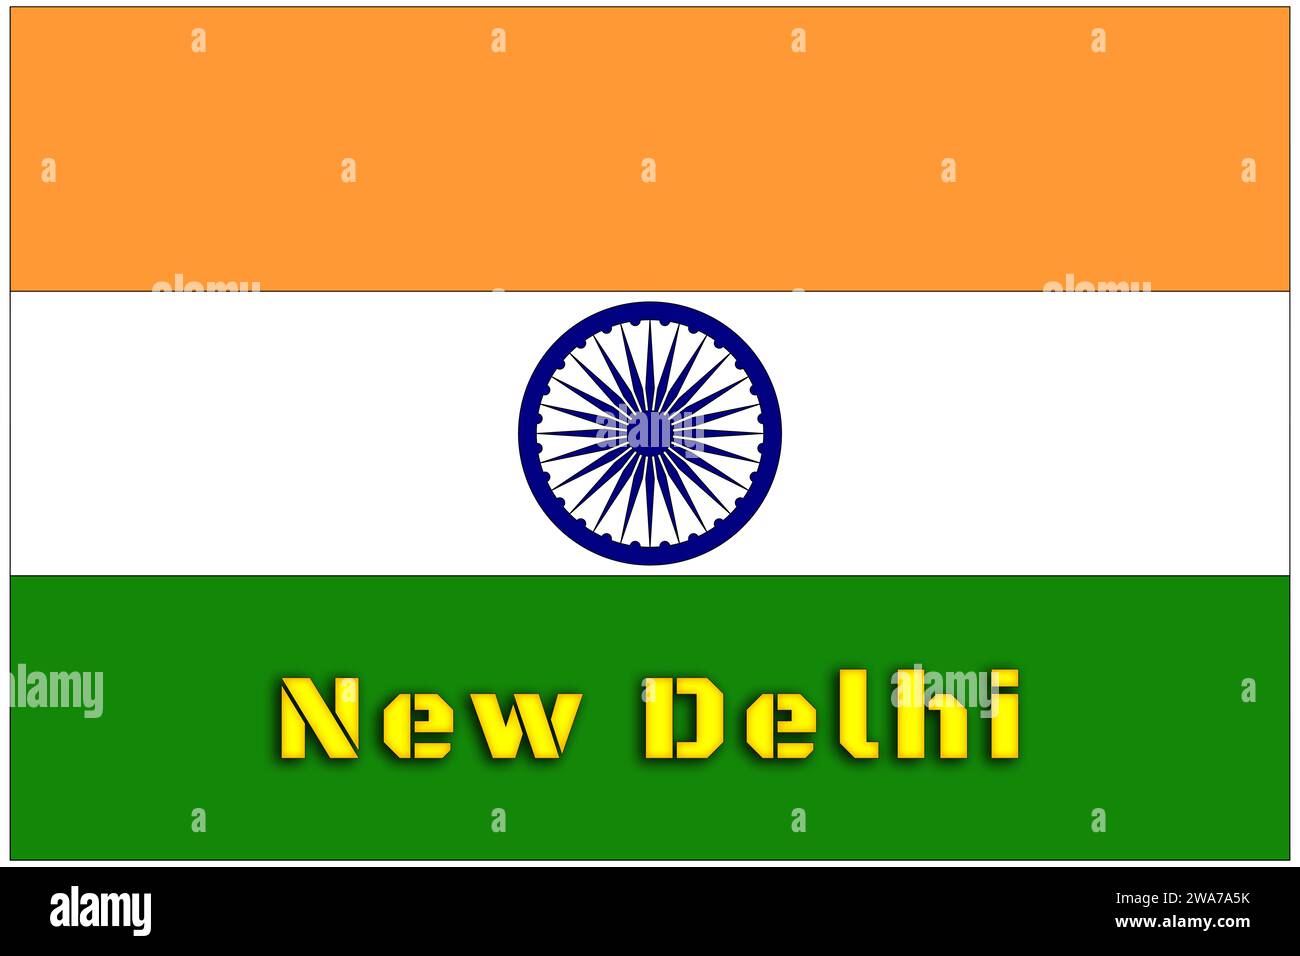 Inde, drapeau indien avec le nom de la capitale de New Delhi, le drapeau avec les proportions officielles correctes et les couleurs. Banque D'Images